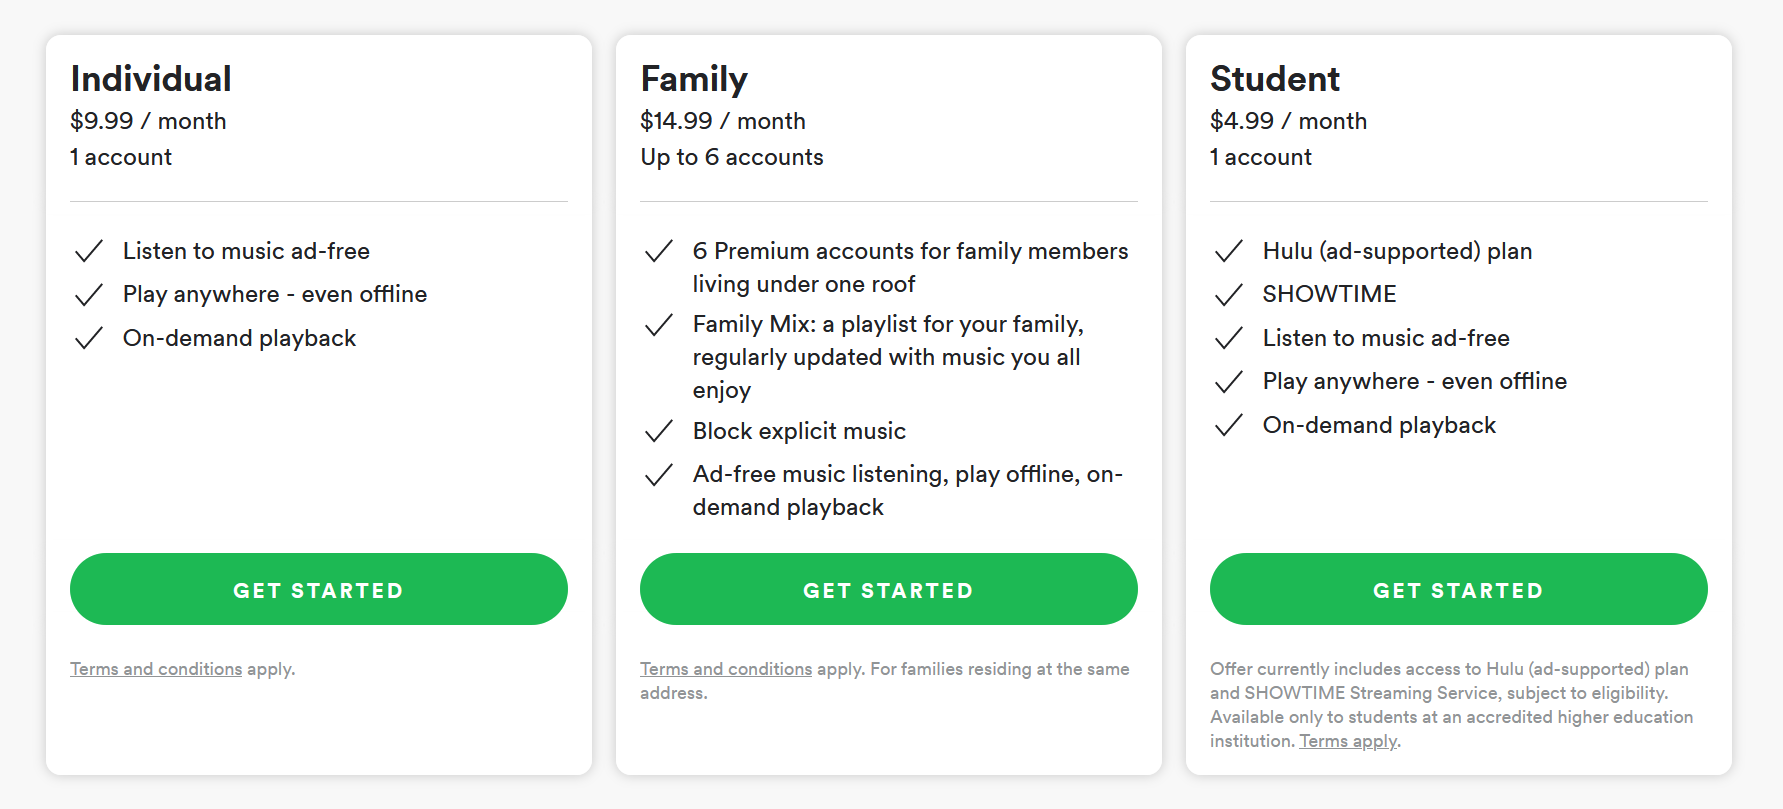 Is Hulu Still Free On Spotify